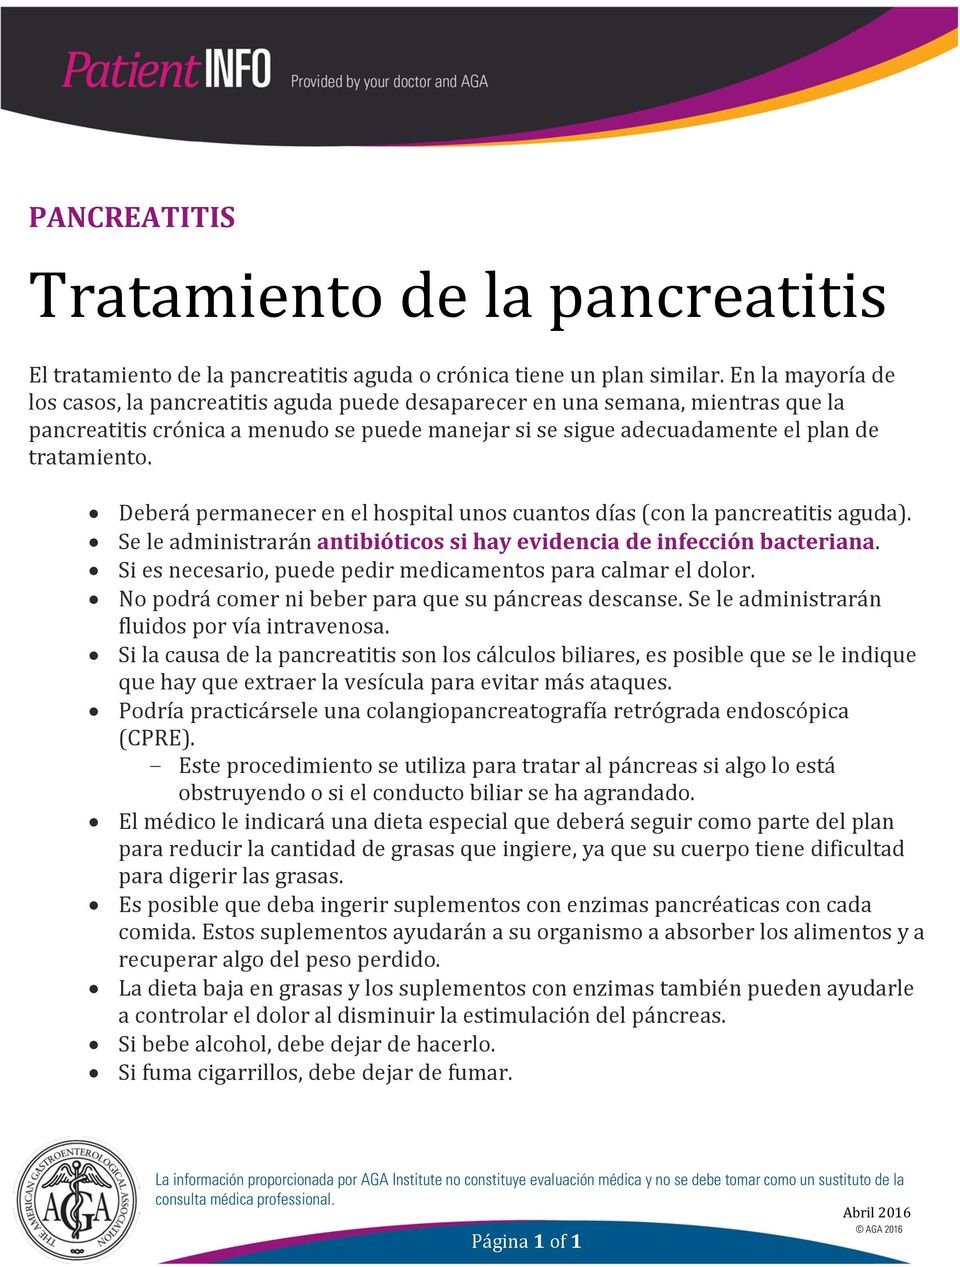 Deberá permanecer en el hospital unos cuantos días (con la pancreatitis aguda). Se le administrarán antibióticos si hay evidencia de infección bacteriana.